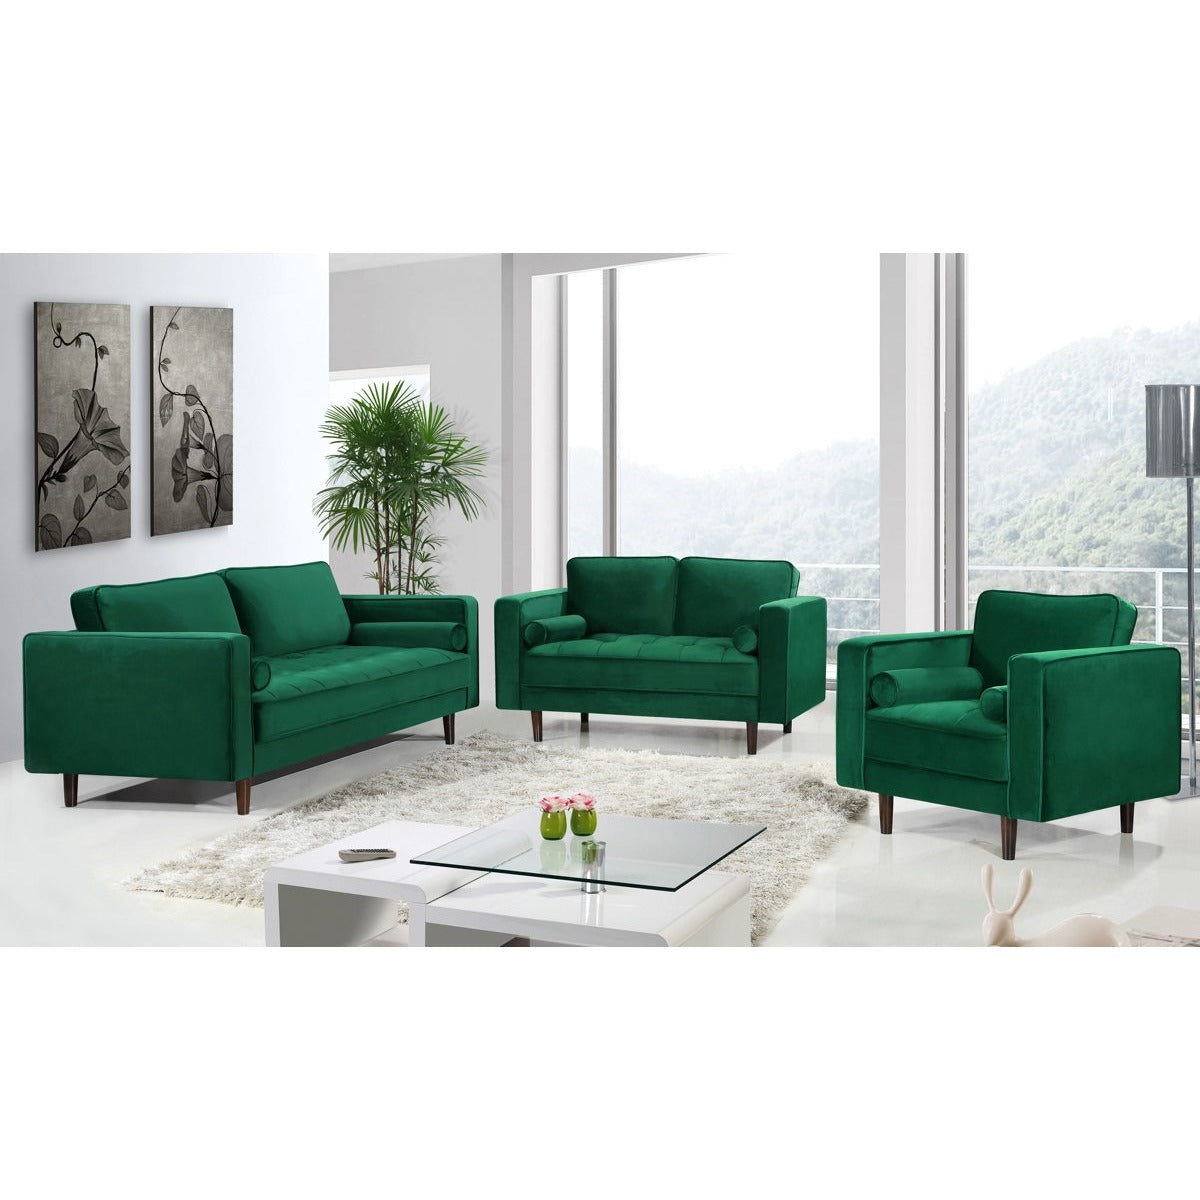 Meridian Furniture Emily Green Velvet Chair-Minimal & Modern